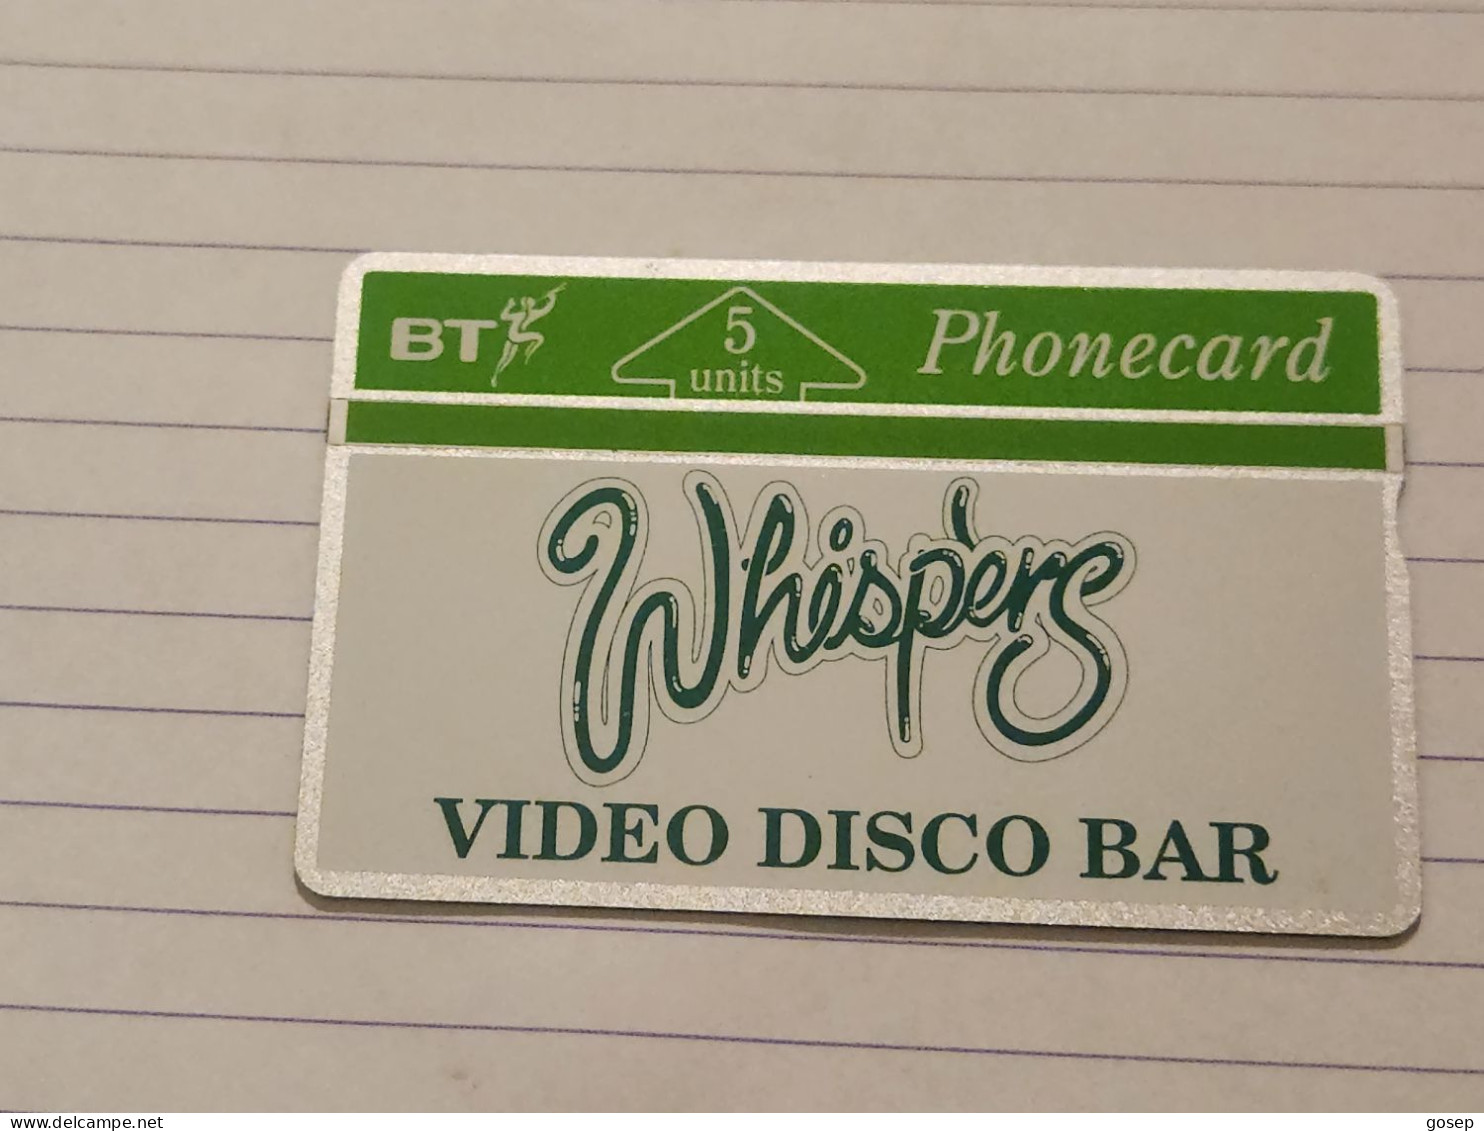 United Kingdom-(BTG-024)-whispers Video Disco Bar-(38)(5units)(201H10358)(tirage-500)(price Cataloge-8.00£mint) - BT Allgemeine